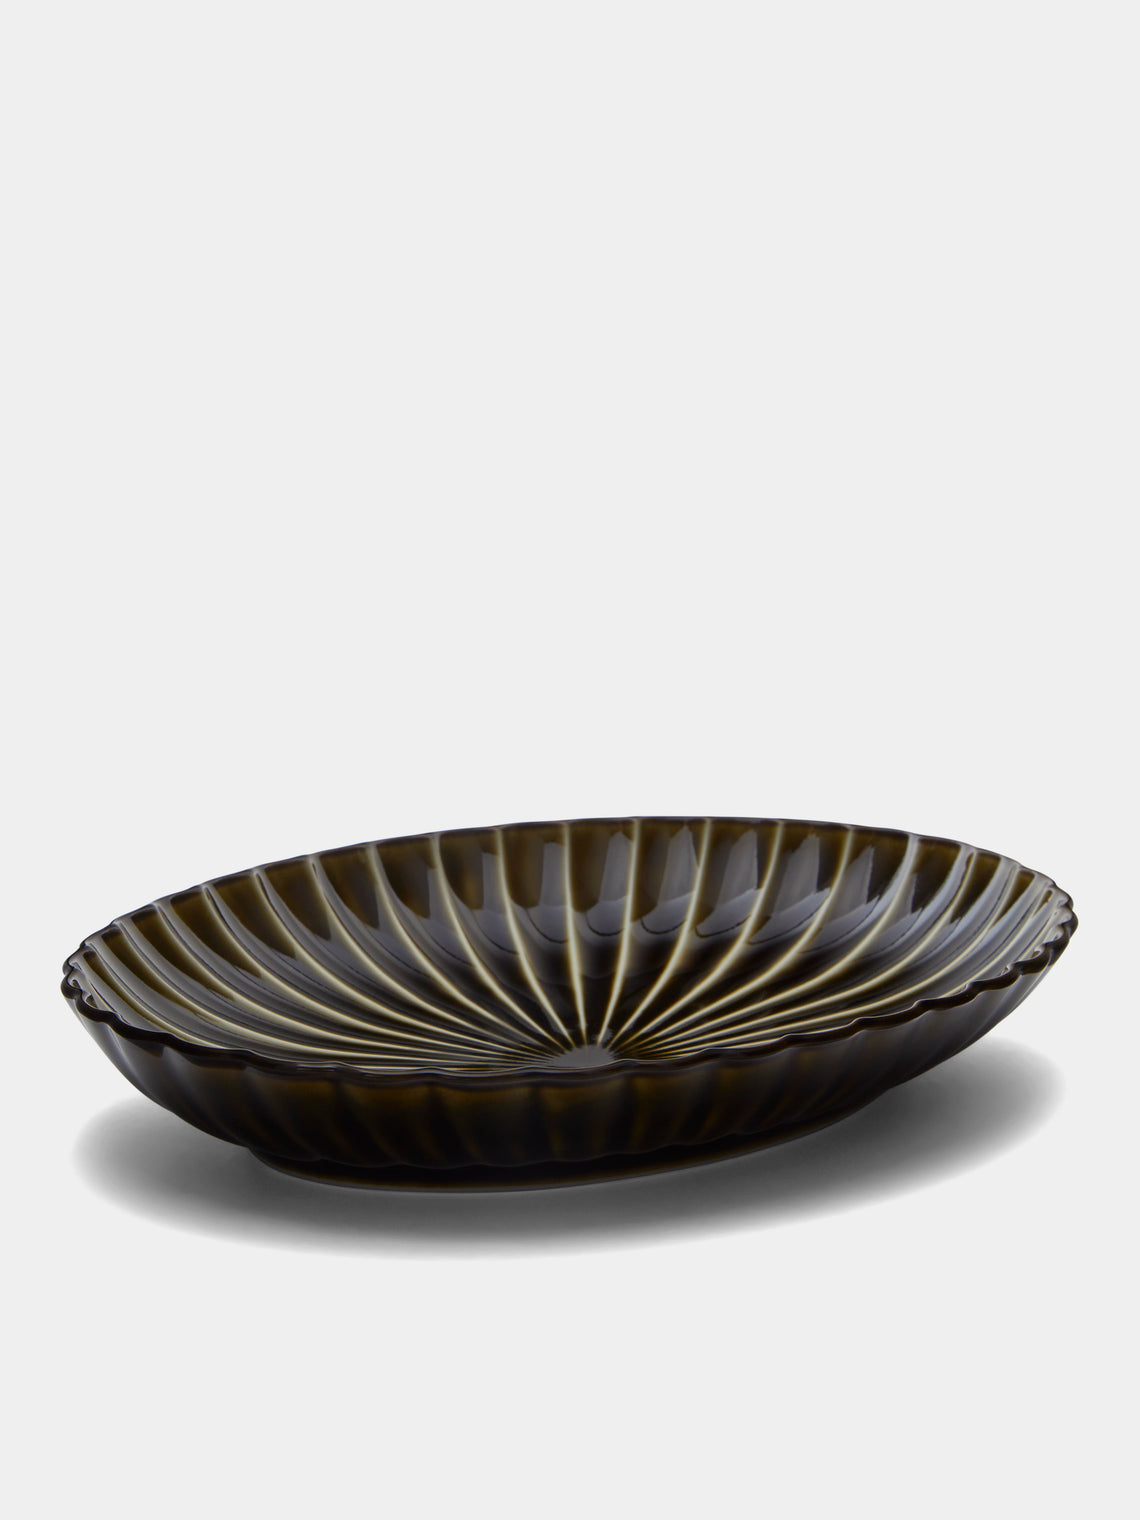 Kaneko Kohyo - Giyaman Urushi Ceramic Oval Platter -  - ABASK